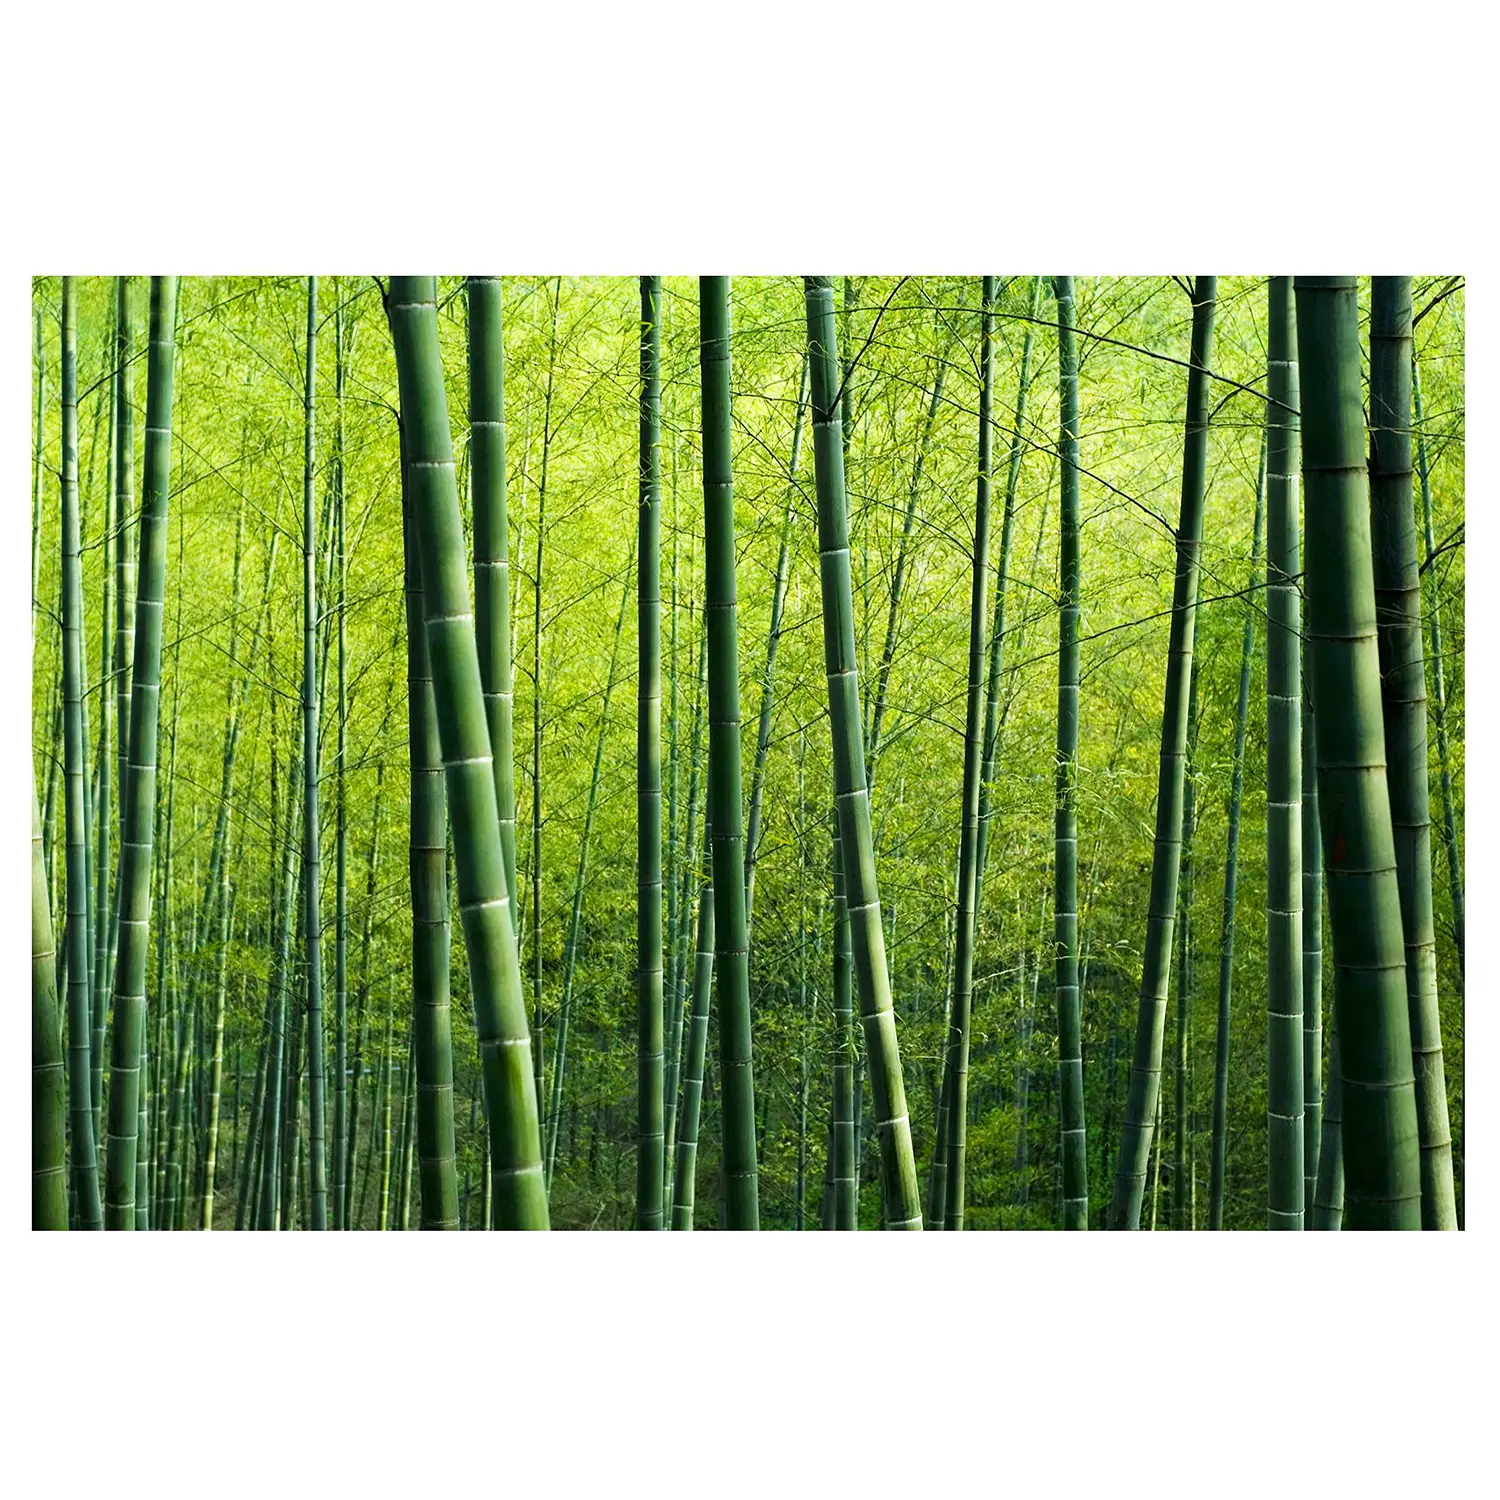 Bambuswald Vliestapete